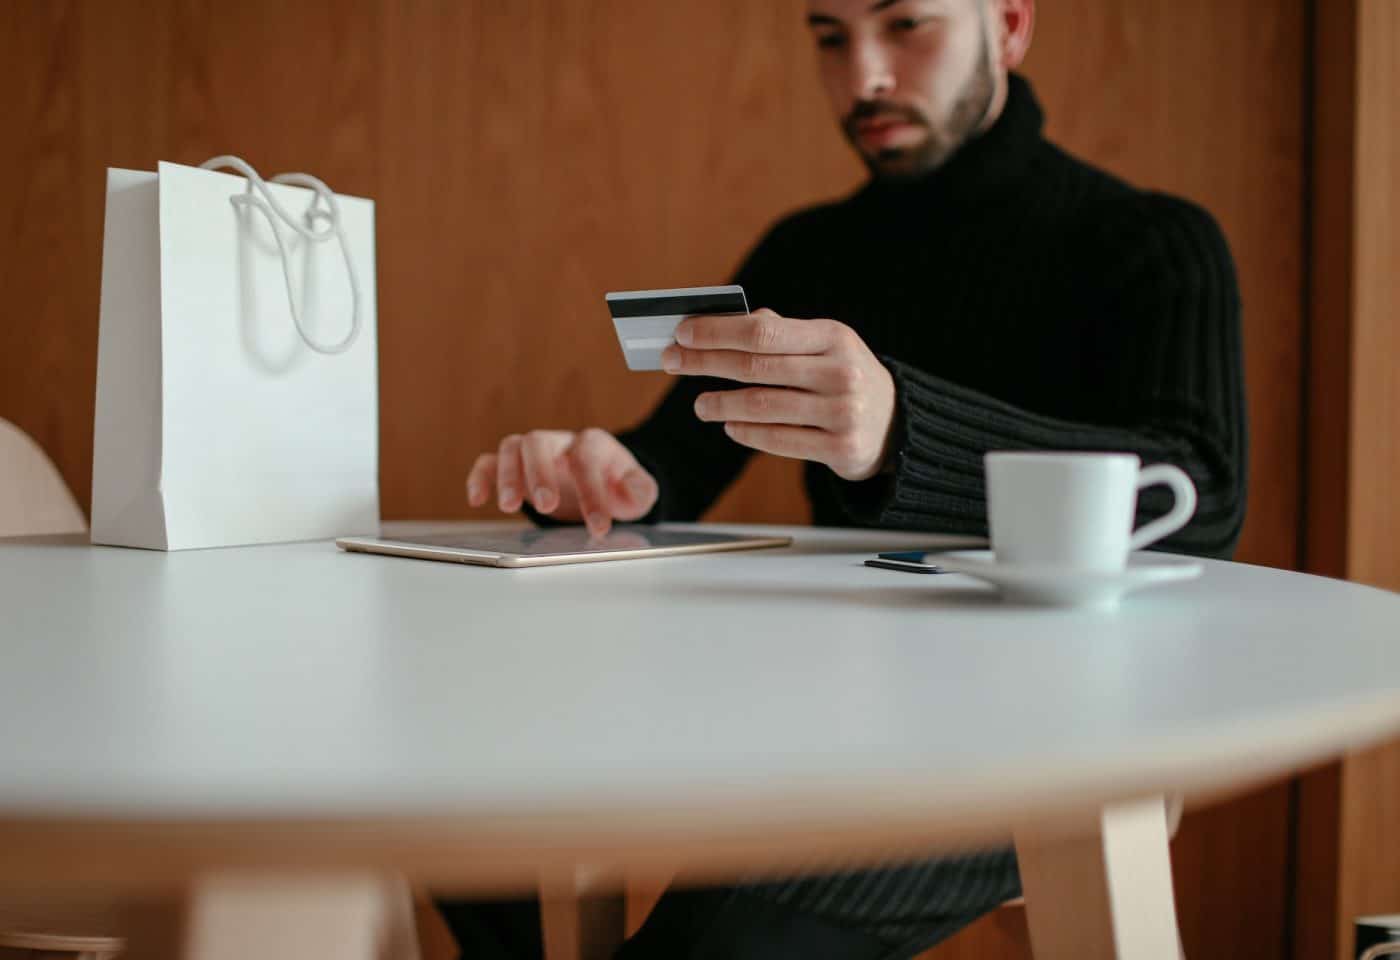 un homme avec une carte bancaire dans la main en train de faire du shopping en ligne. Un sac blanc et une tasse posés sur la table